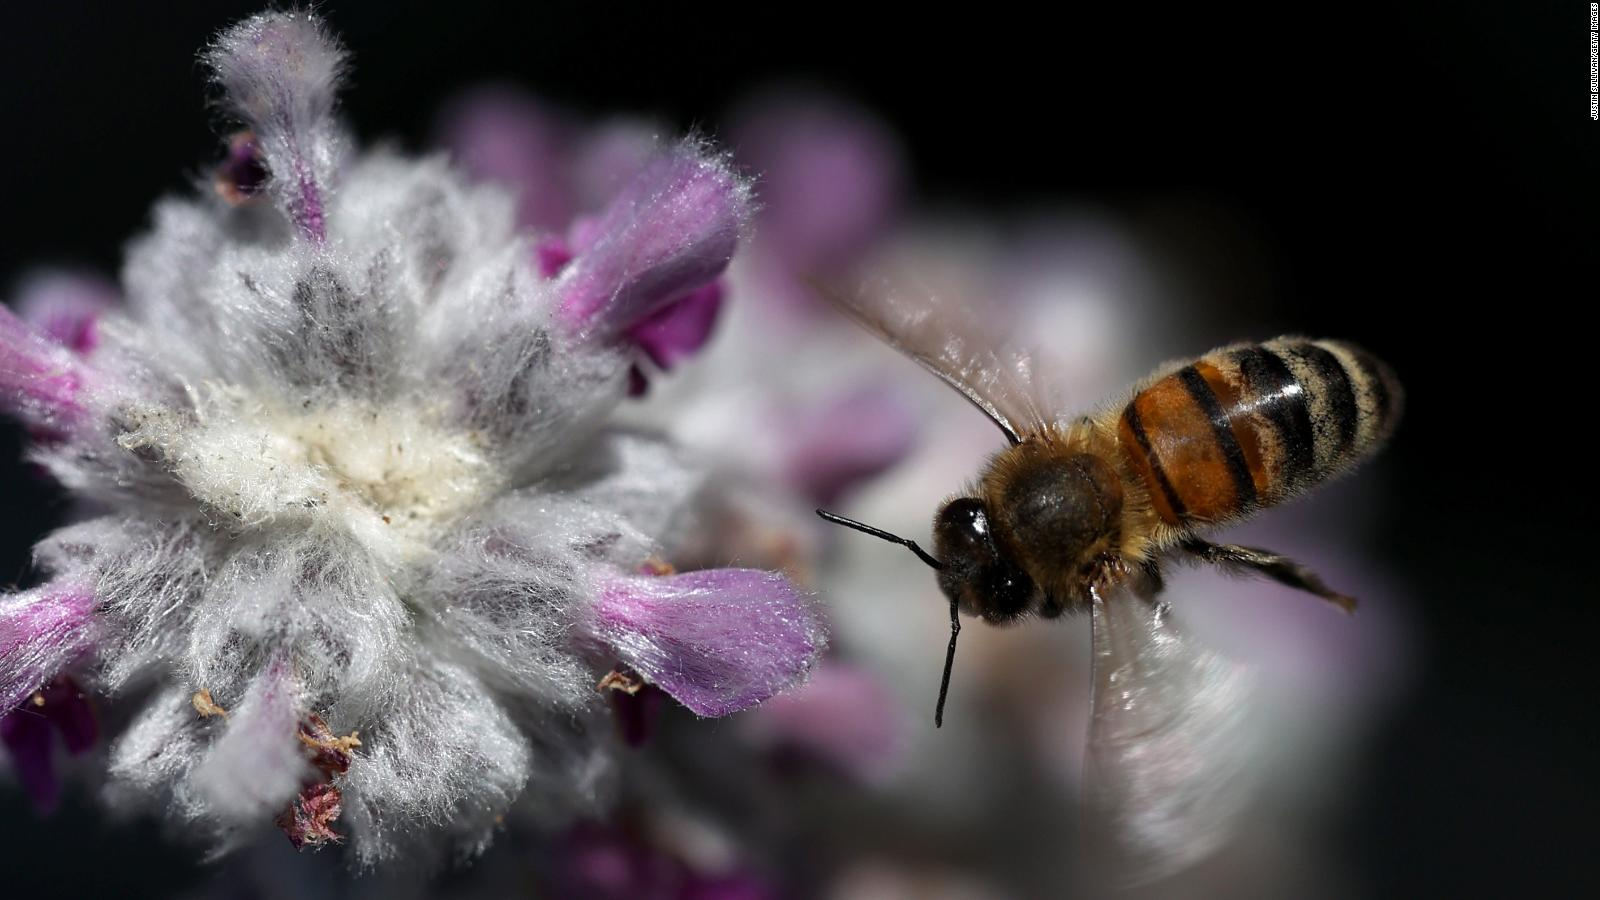 5 cosas sorprendentes sobre las abejas en el Día Mundial de las Abejas